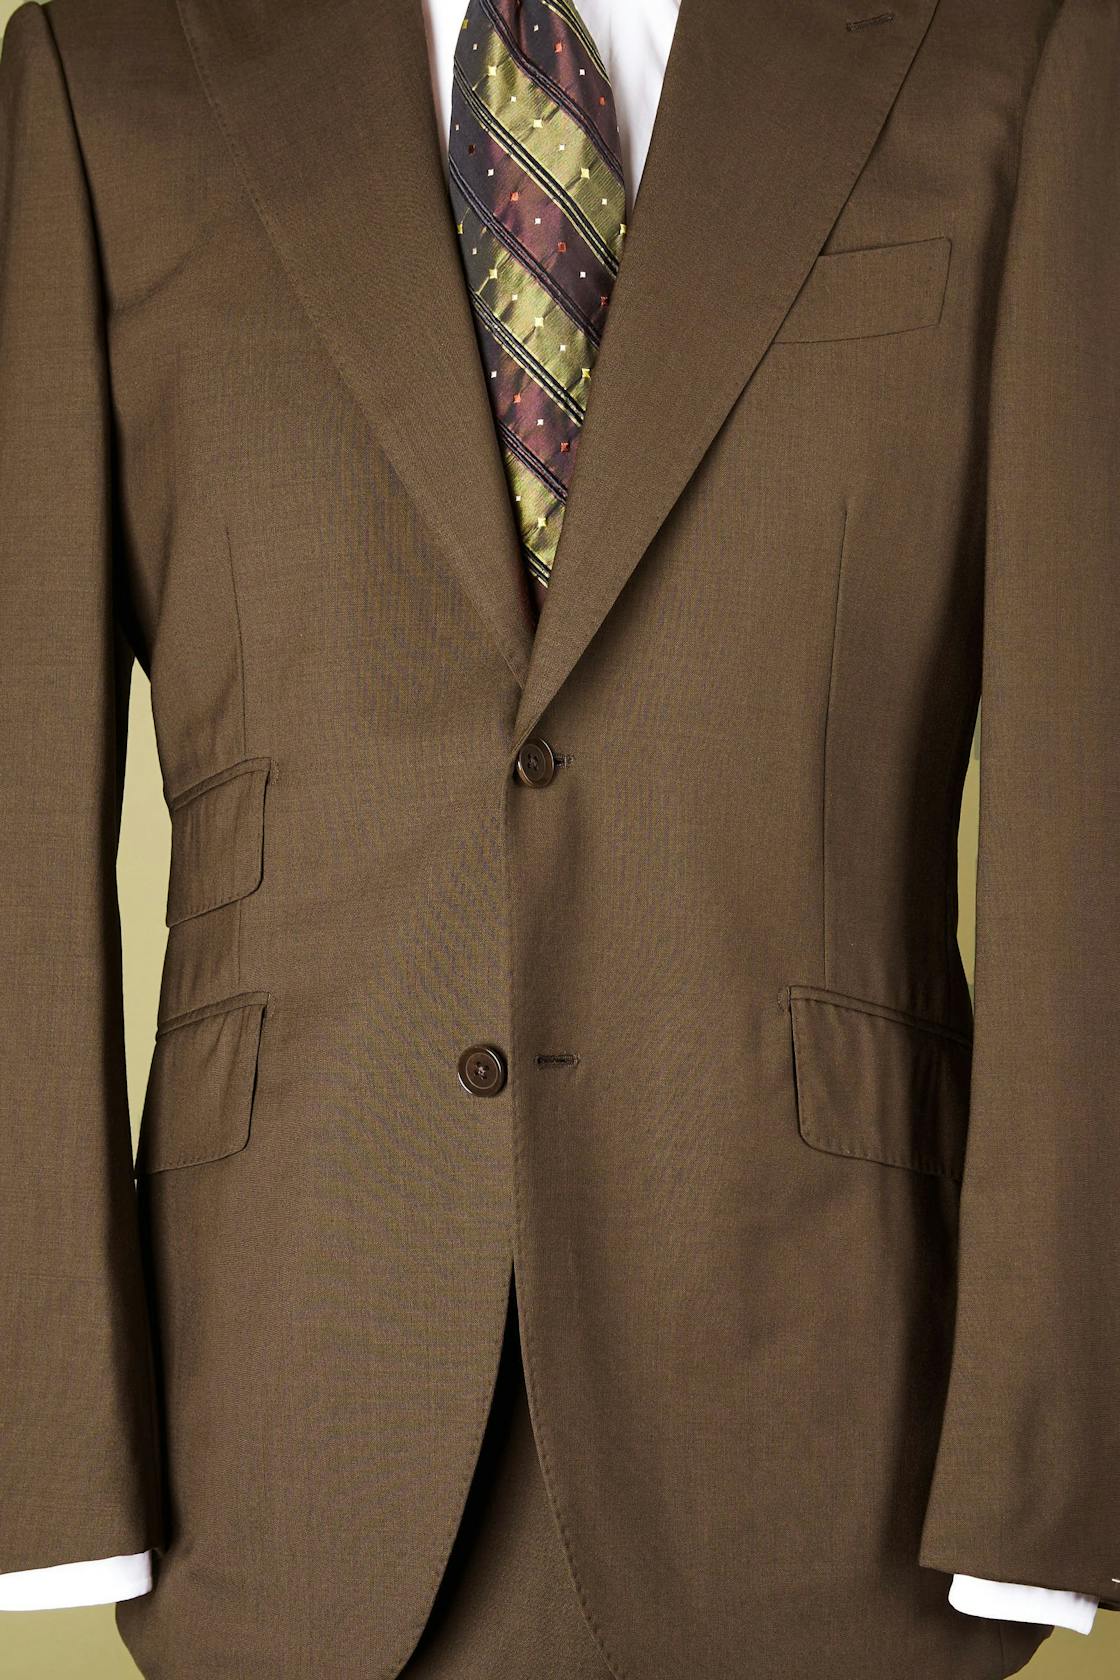 Ring Jacket 281 Brown High Twist Wool Suit